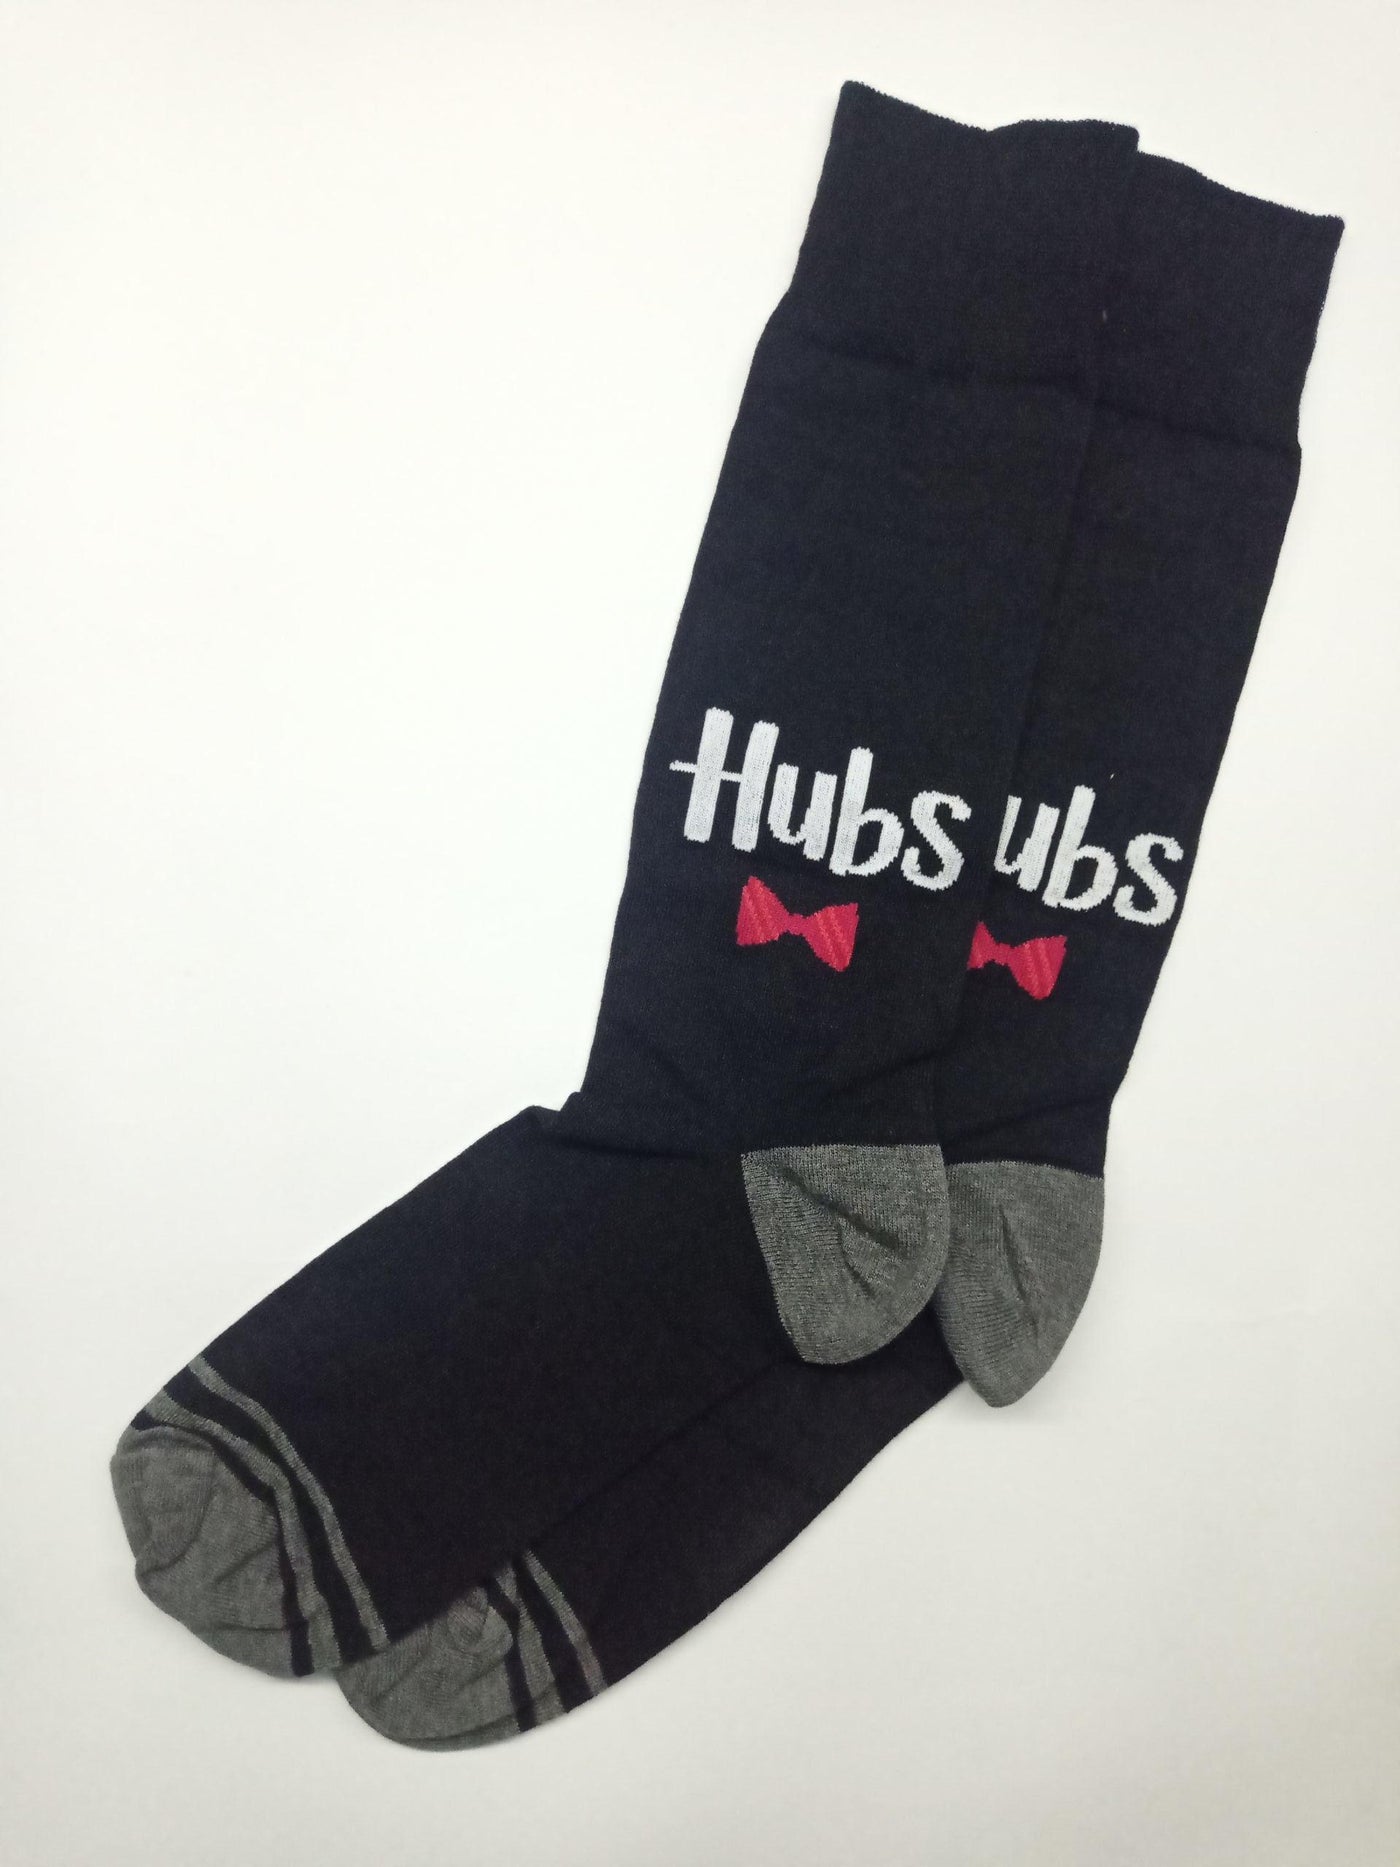 Black Hubs Socks - SOXO #1 Imported Socks Brand in Pakistan